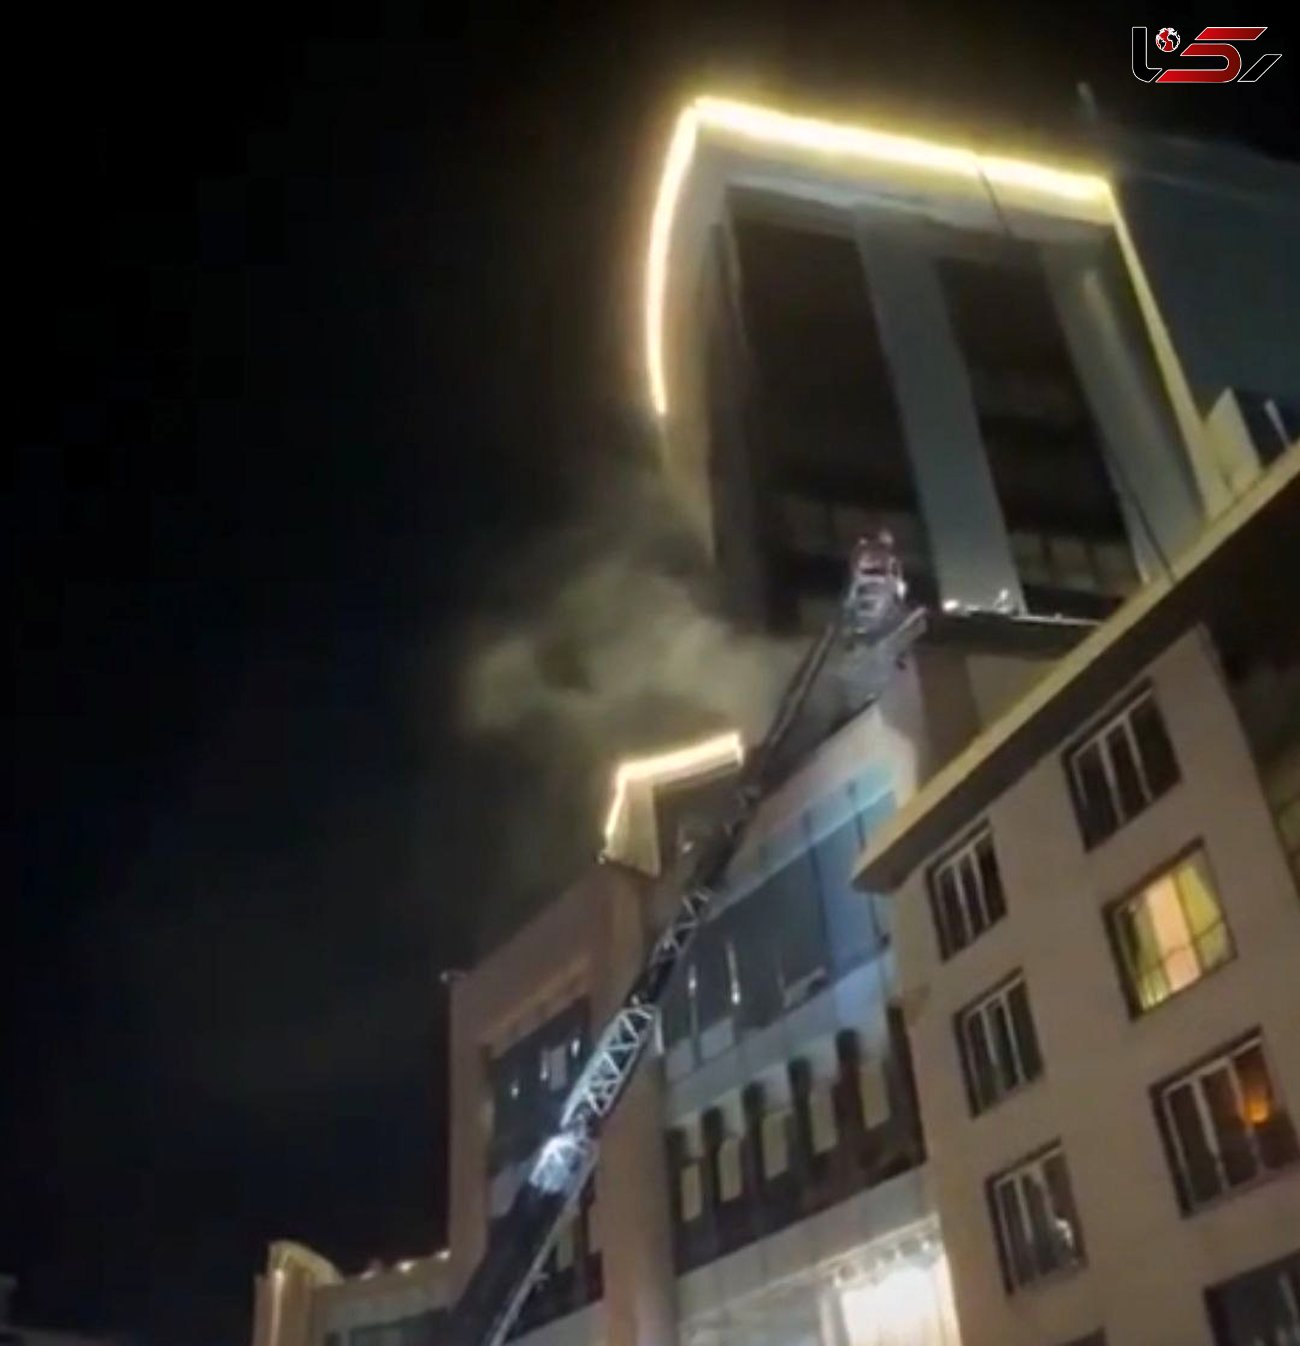 آتش سوزی در مرکز خرید پالادیوم در شمال تهران + فیلم